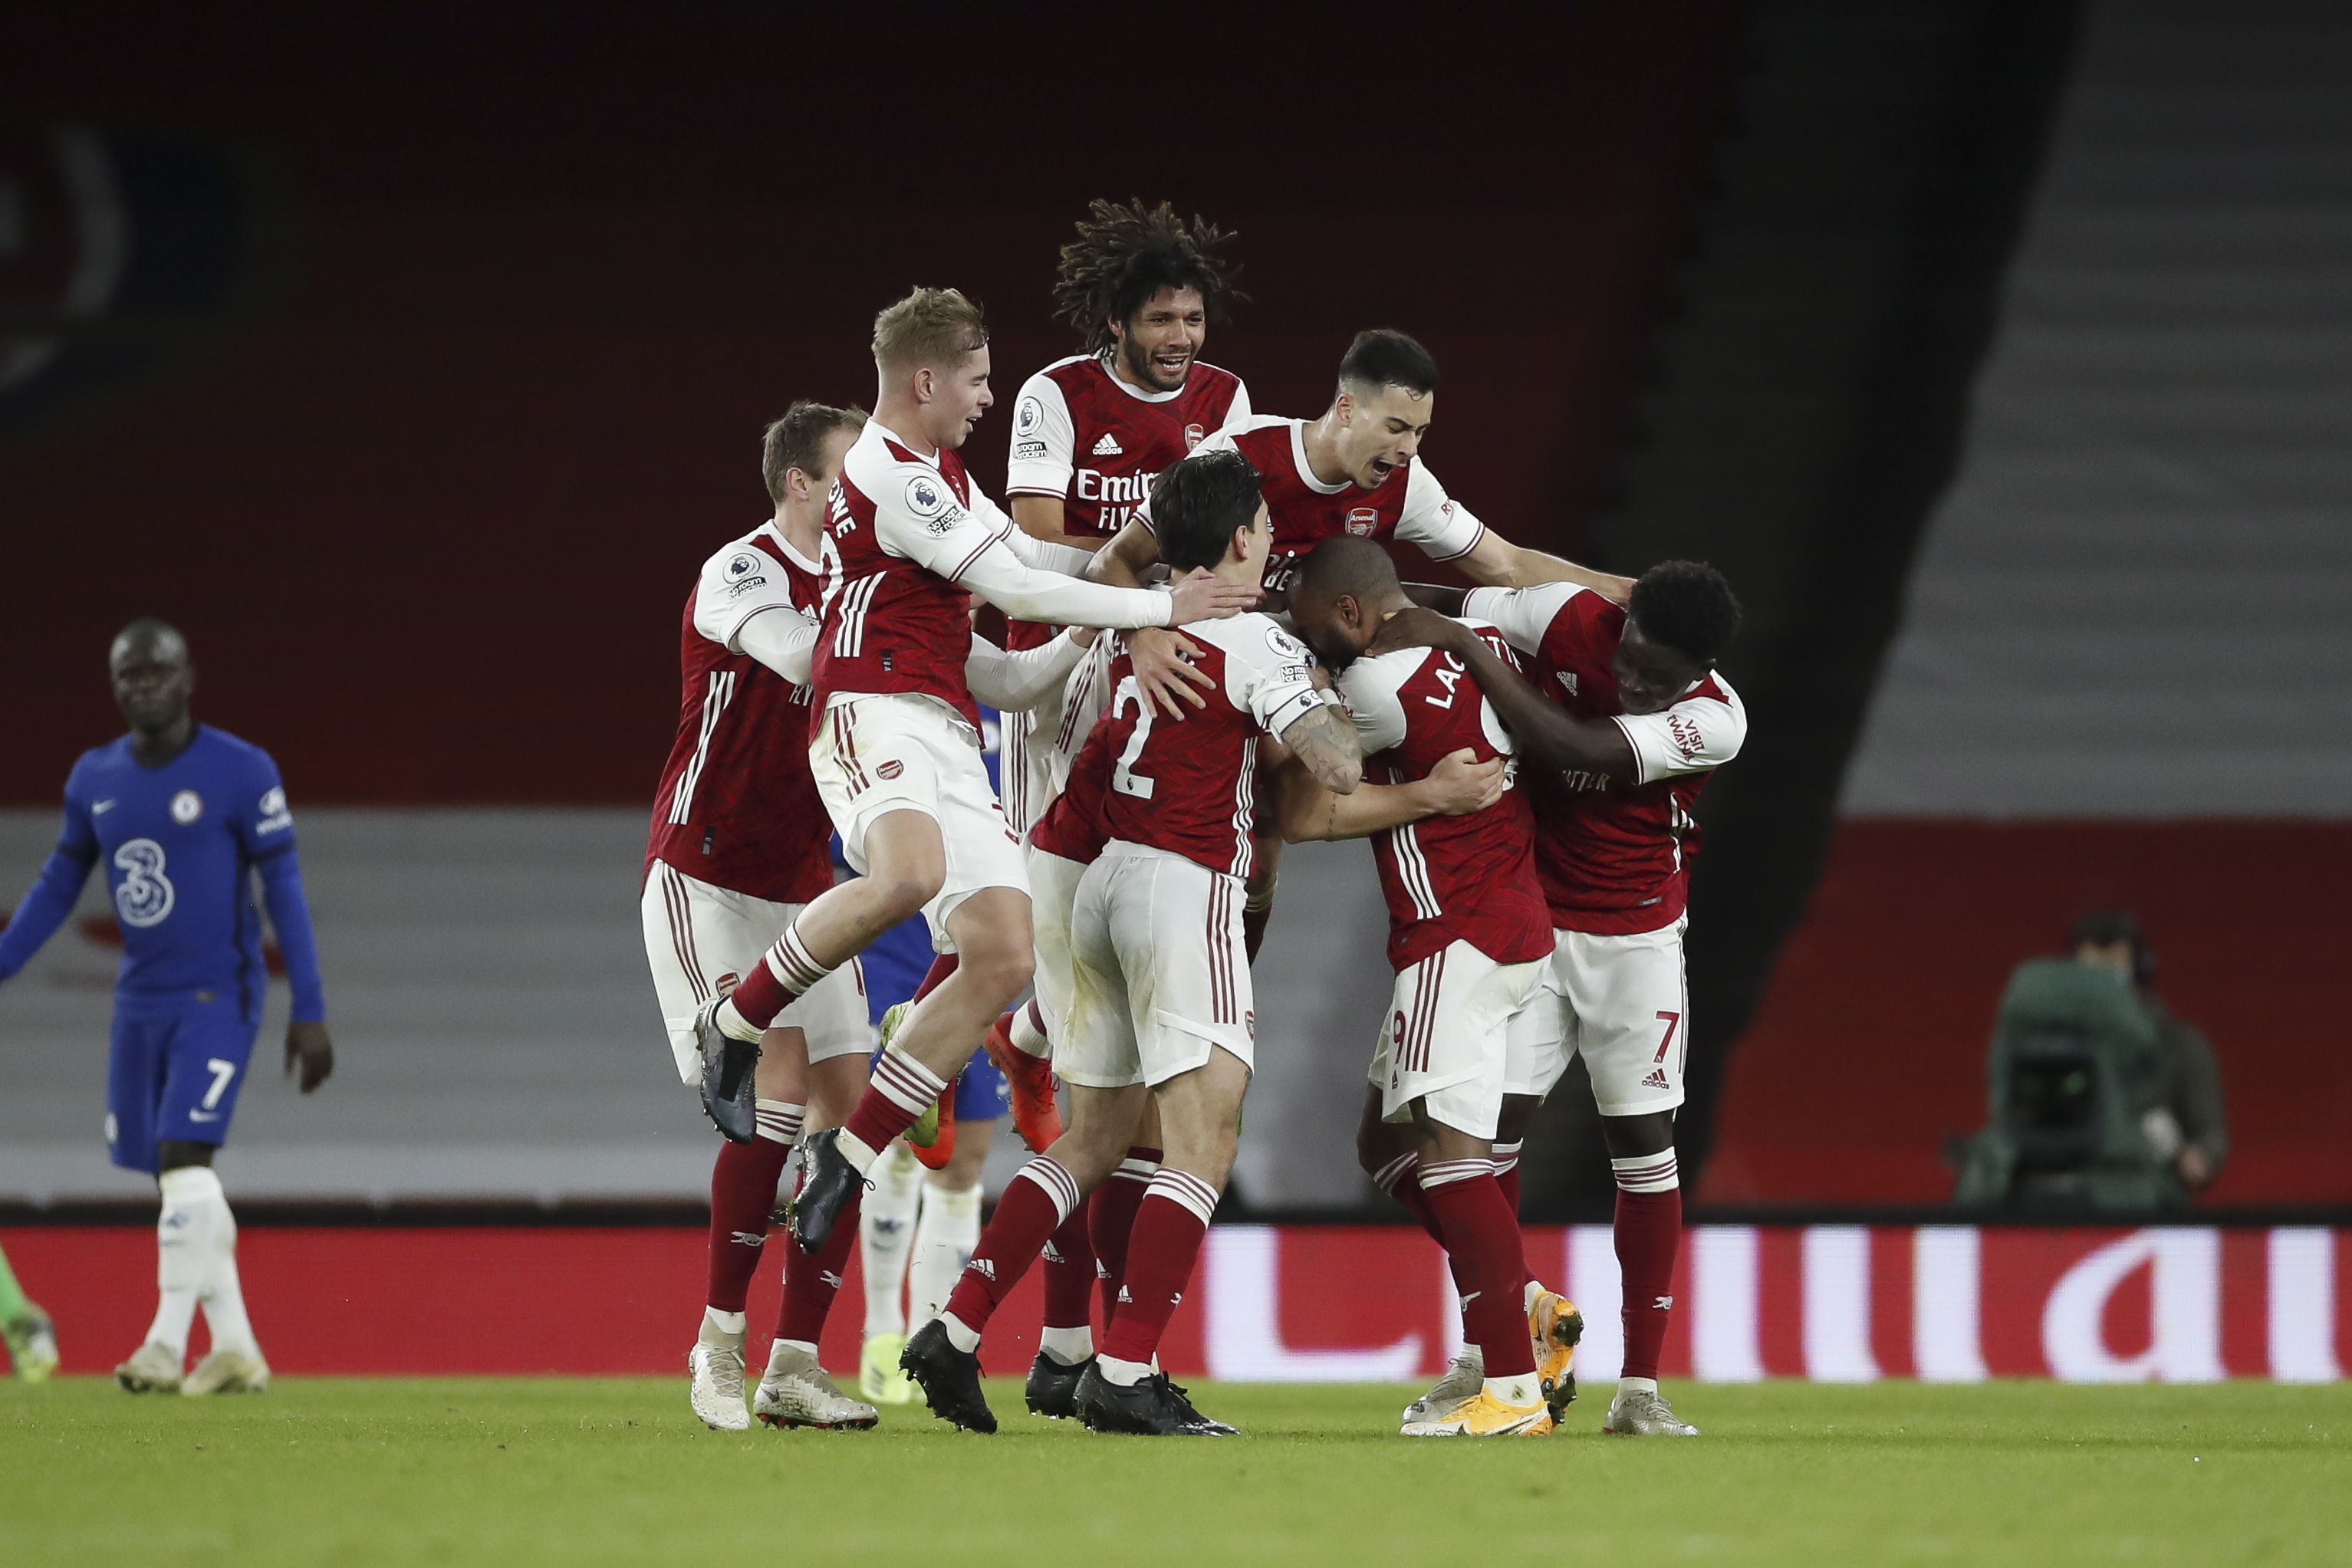 El Arsenal logró una importante victoria 3-1 sobre el Chelsea durante la jornada del Boxing Day en la Premier League. (Foto Prensa Libre: EFE)